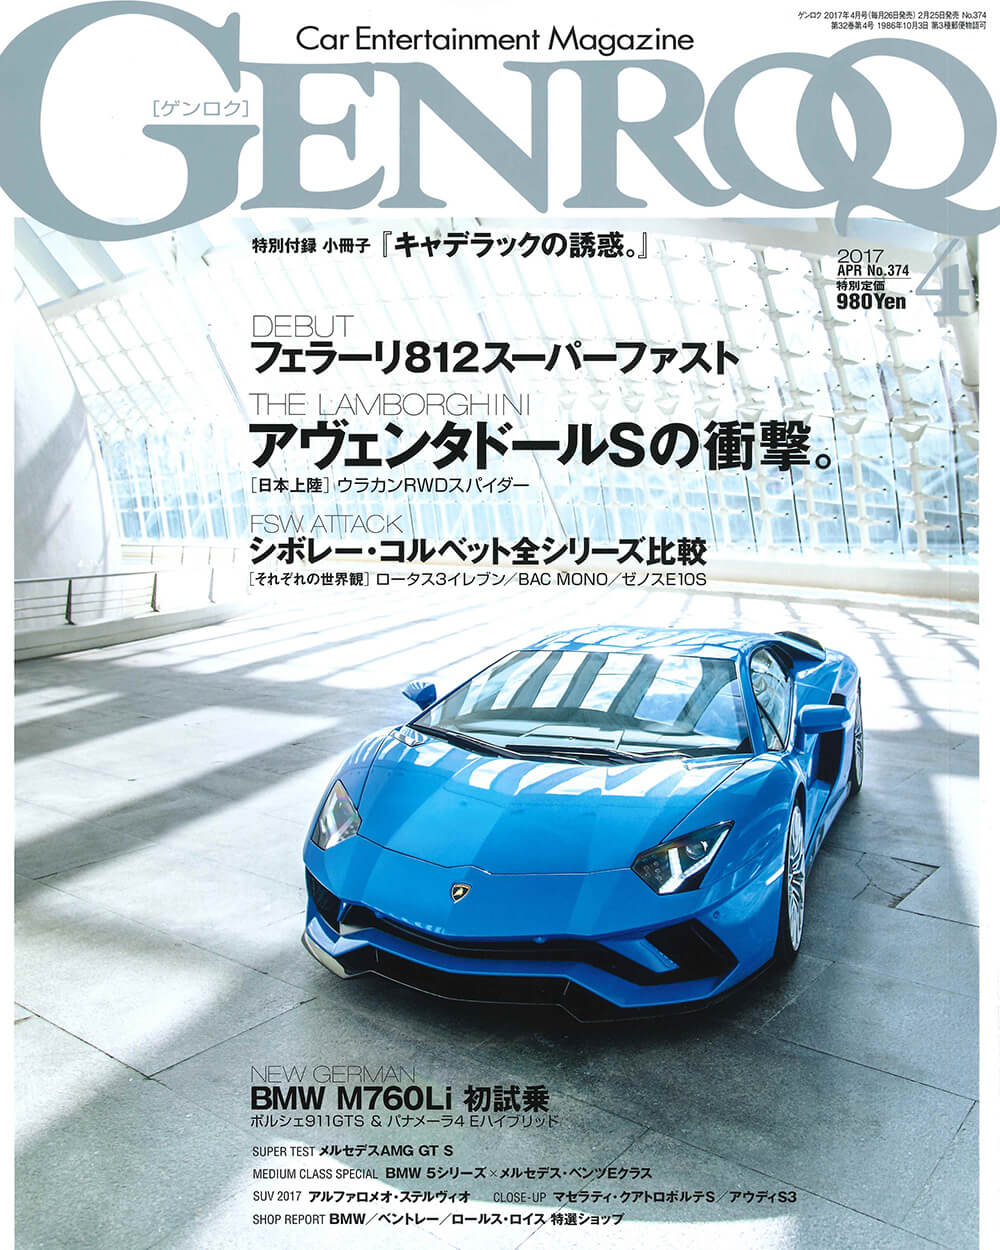 GENROQ Apr. issue